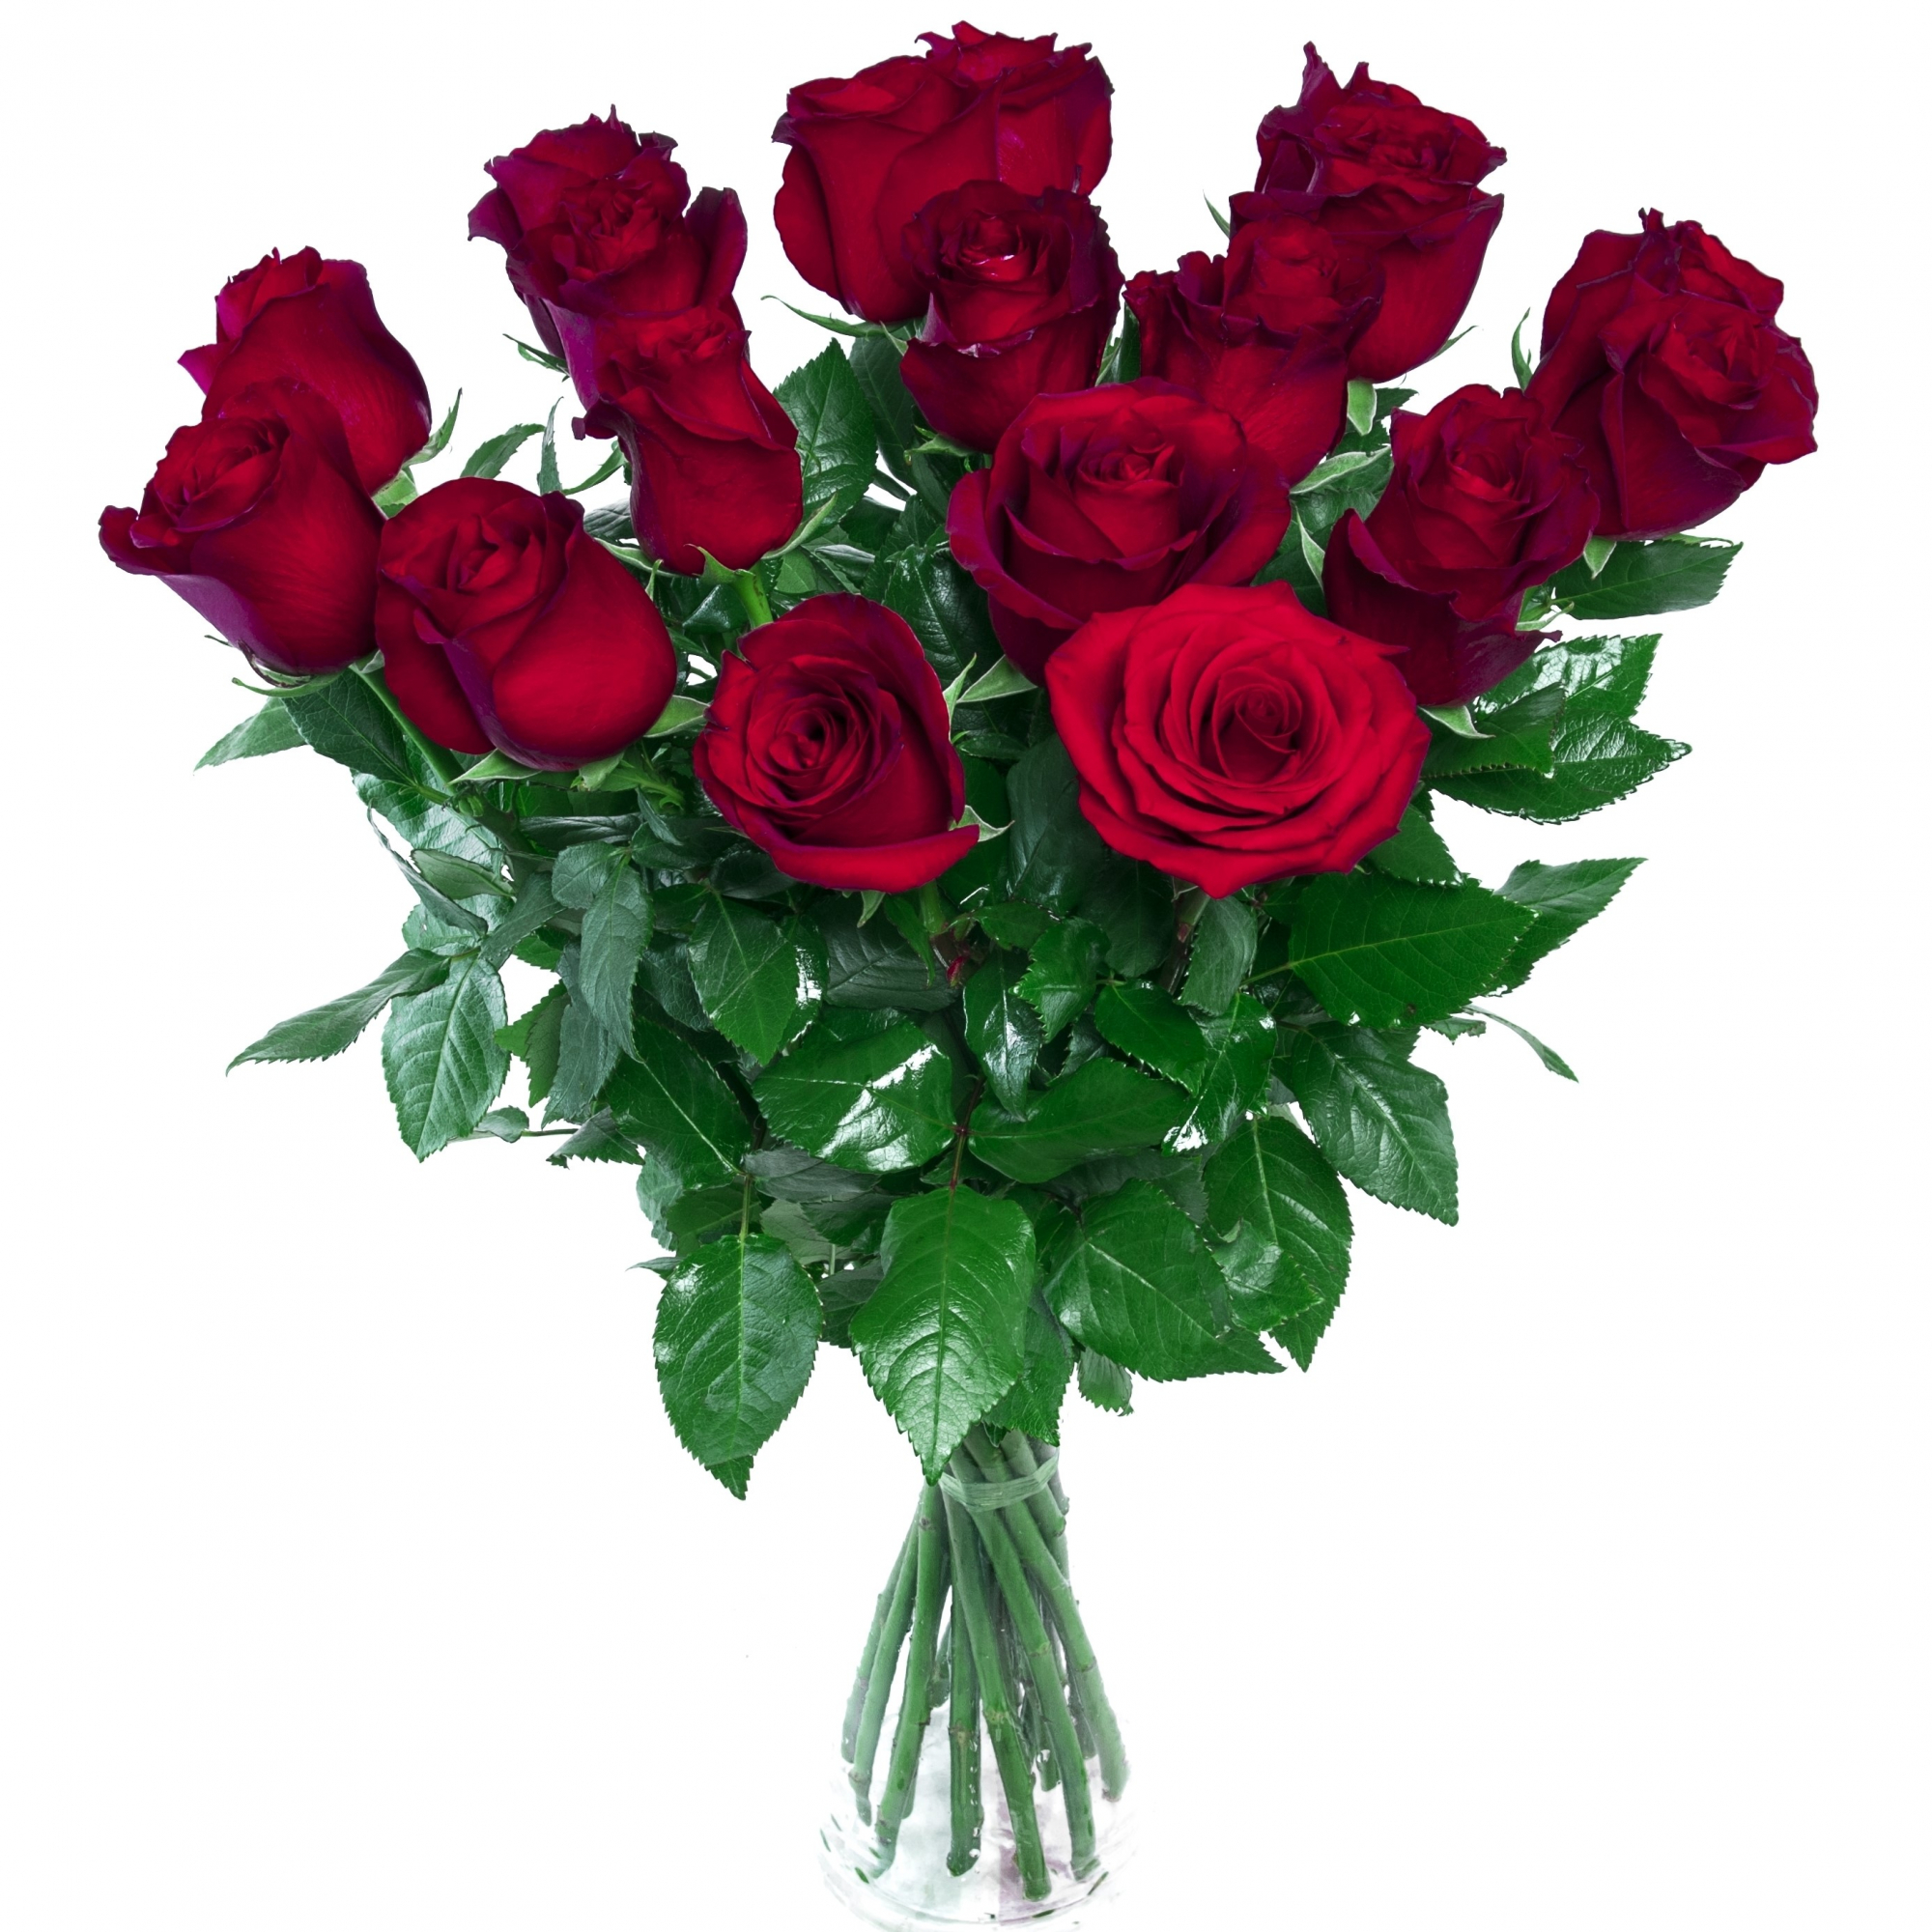 Bouquet de roses rouges - Botanica Brussels